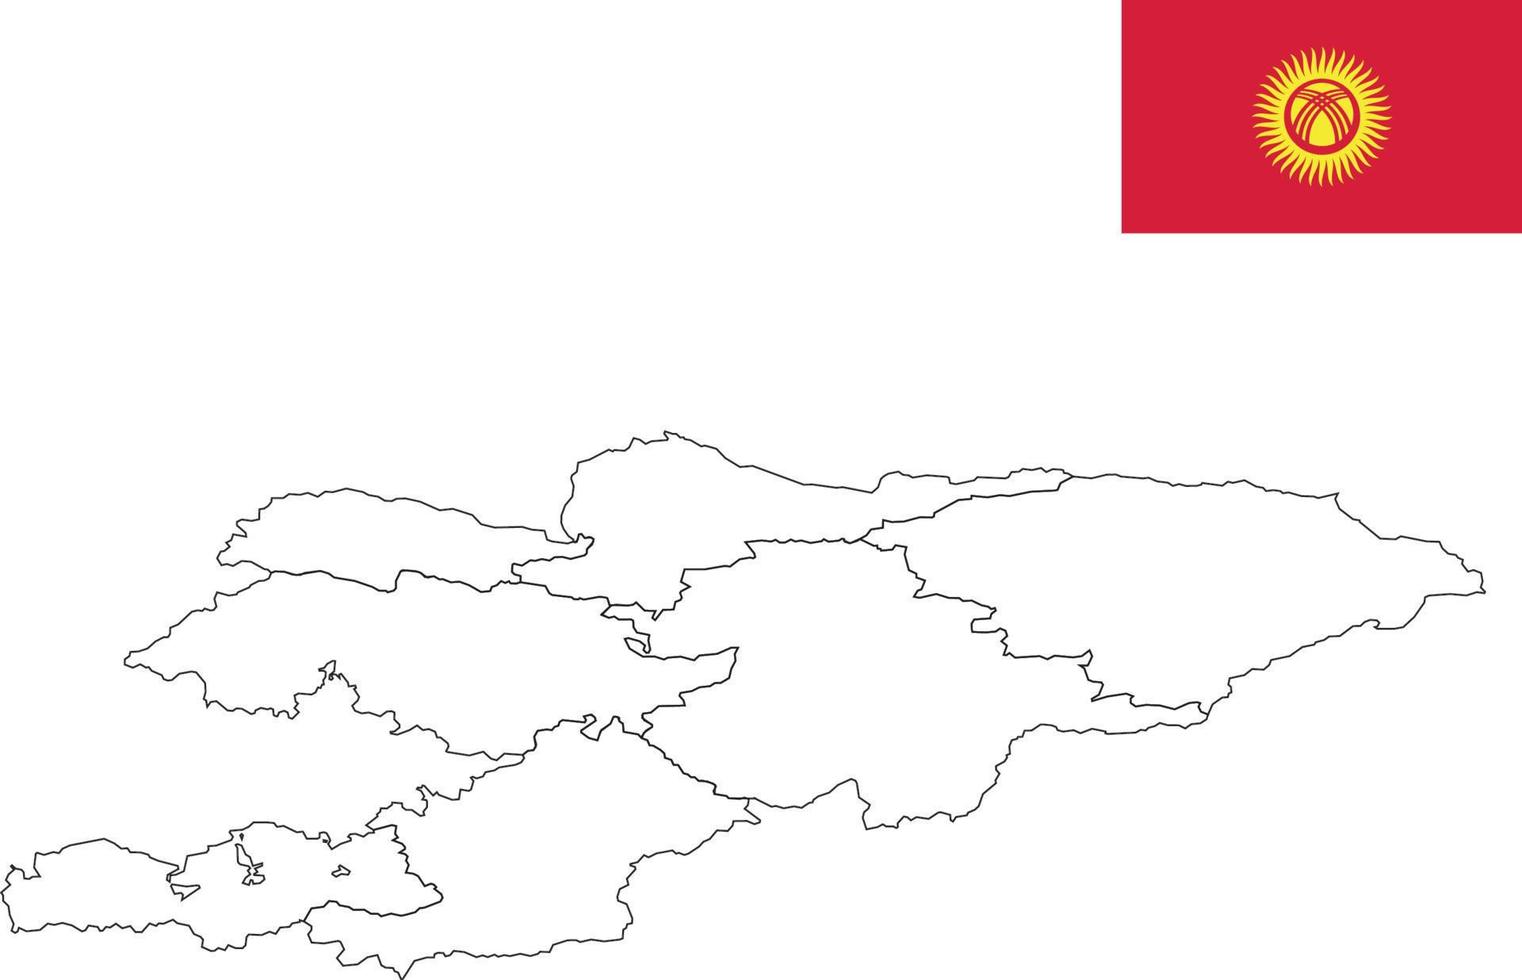 Karte und Flagge von Kirgisistan vektor